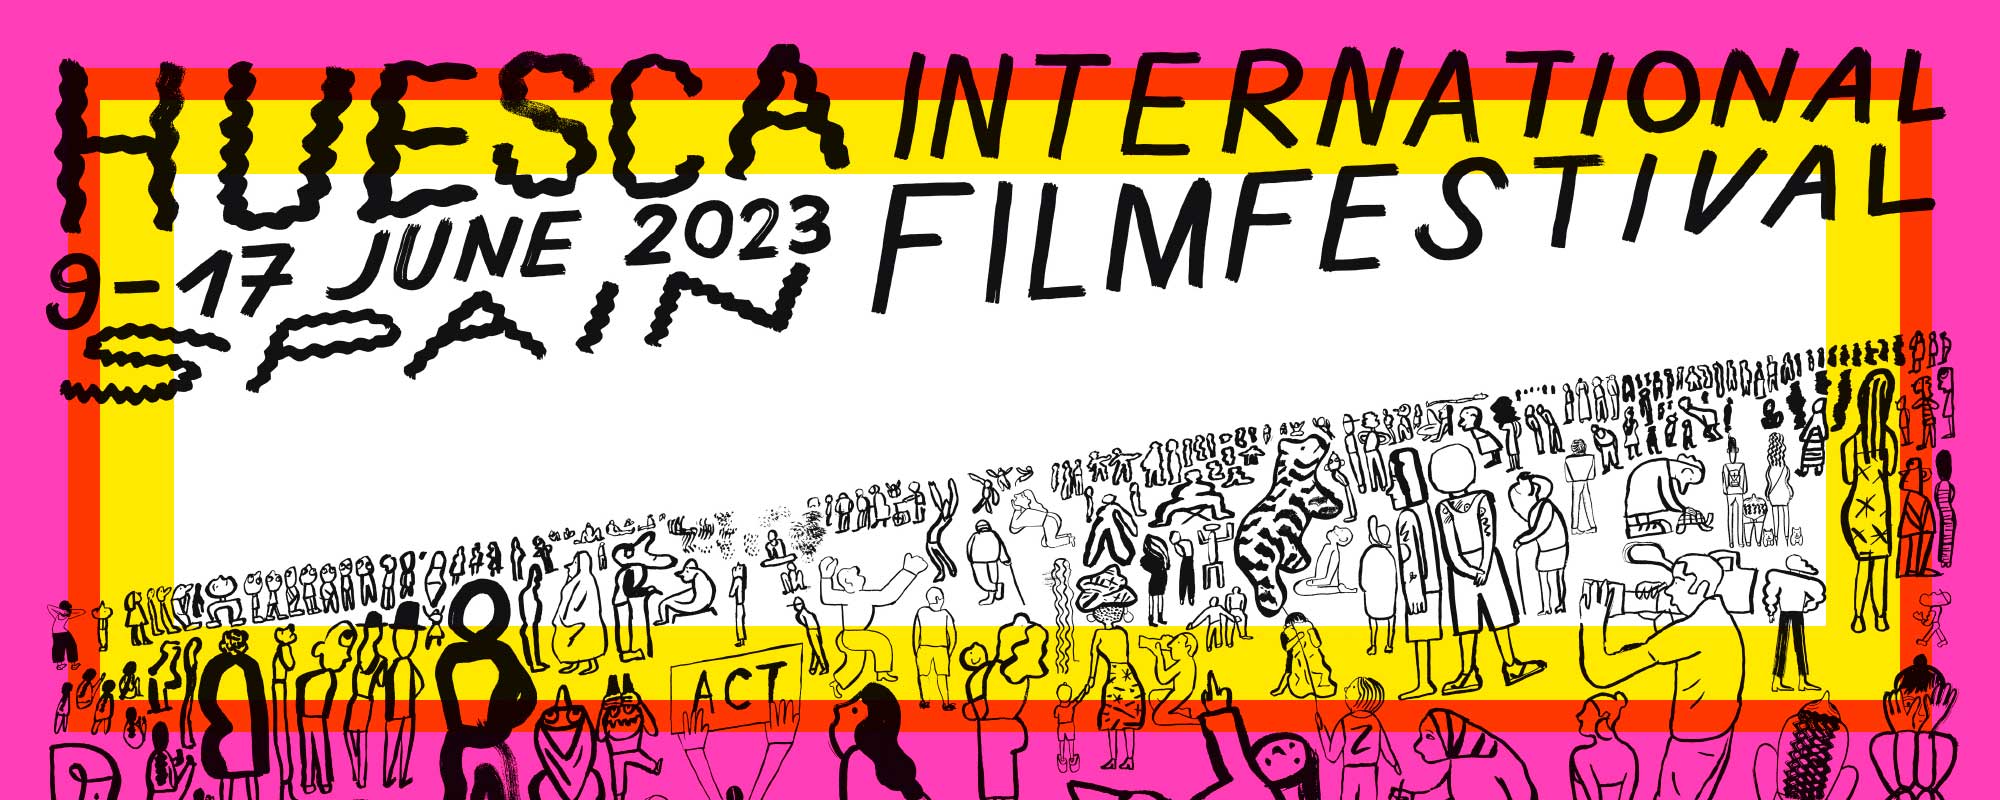 (c) Huesca-filmfestival.com